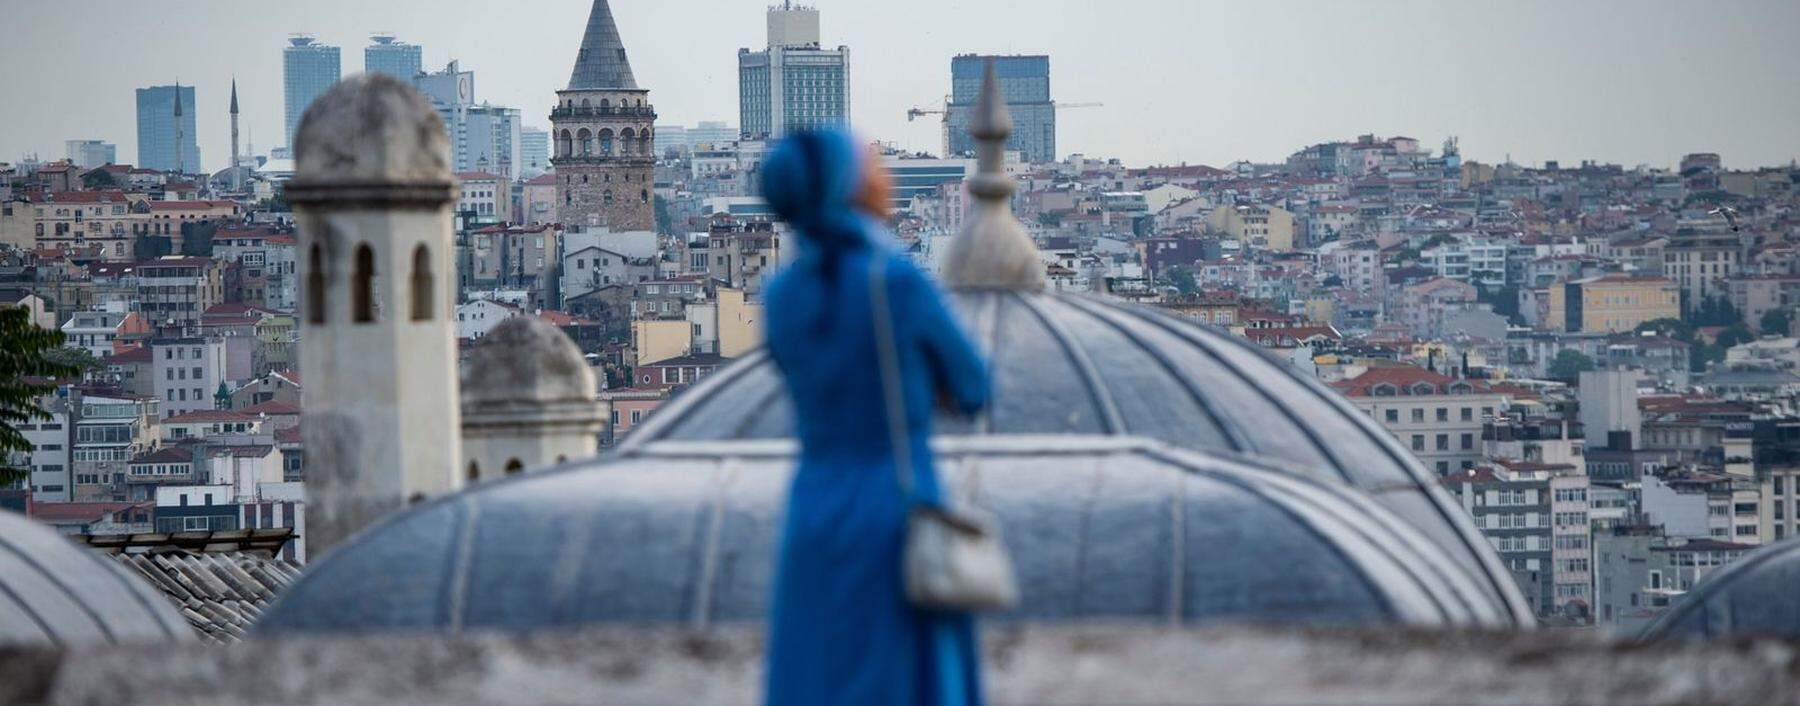 Orhan Pamuk gebe der „melancholischen Seele seiner Stadt eine Stimme“, hieß es in der Nobelpreis-Begründung. Blick von der Süleymaniye-Moschee auf Istanbul.